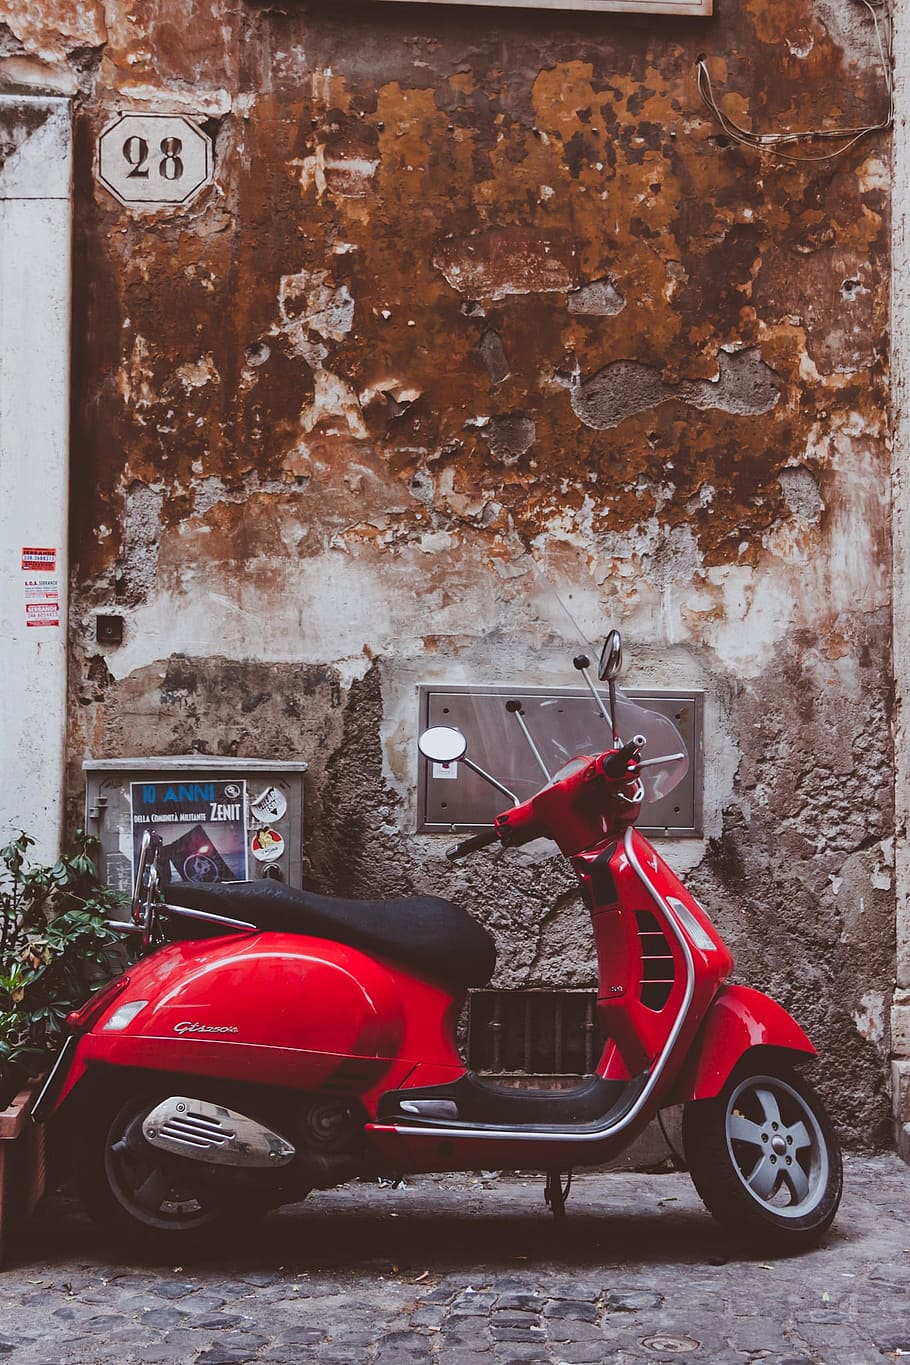 vermelho, motor scooter, estacionado, parede, vespa, diversão, culto, veículo, ciclomotor, flitzer